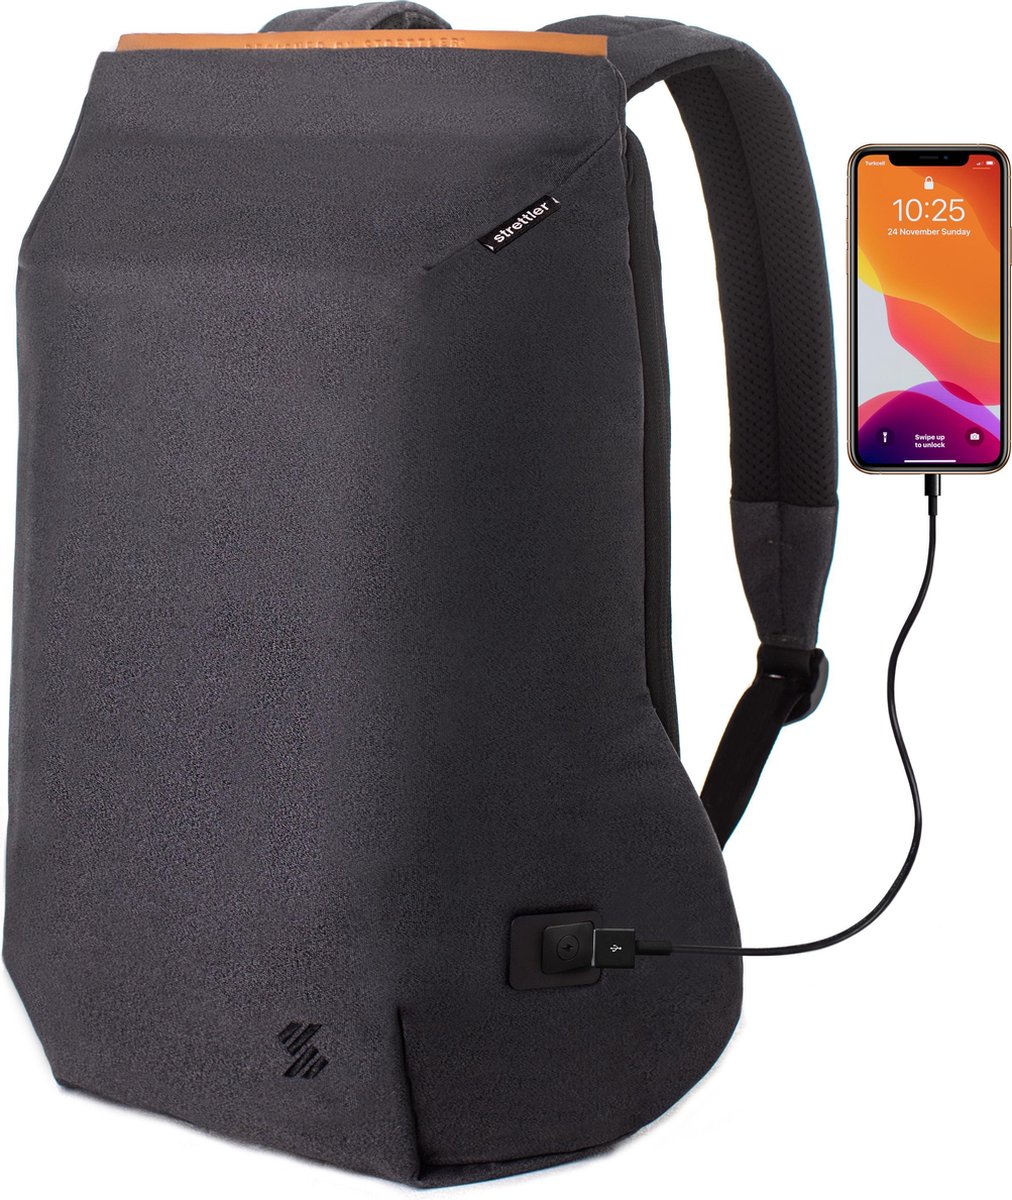 Strettler Booger rugzak met 3.0 USB aansluiting - 15.6 inch laptop- en tablet vak -  Voor mannen/vrouwen - Anti-diefstal rugtas/laptoptas - Schooltas - Anti-scratch - Anti theft backpack - Waterdicht - Easy Charging - Strettler